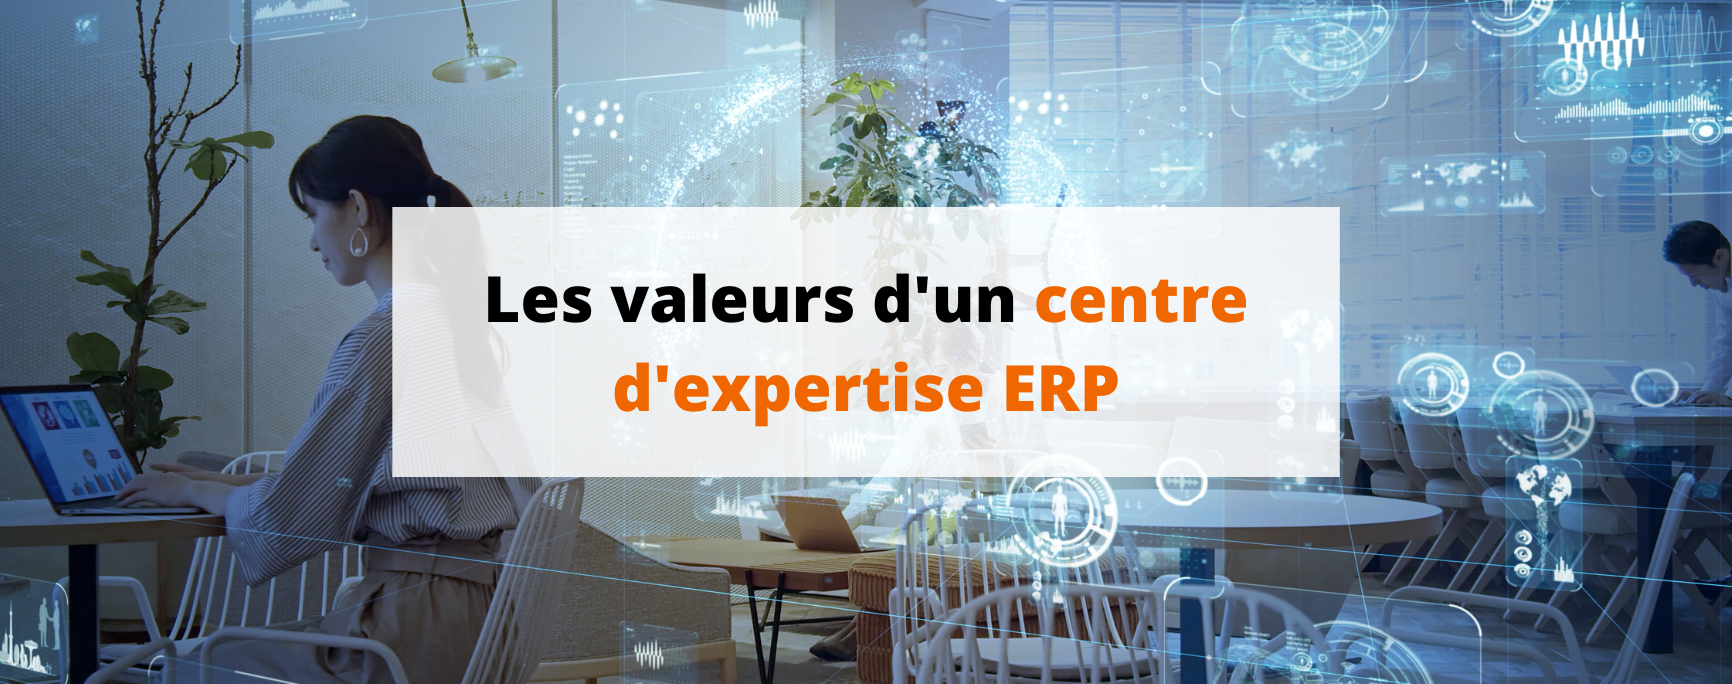 Les valeurs d'un centre d'expertise ERP